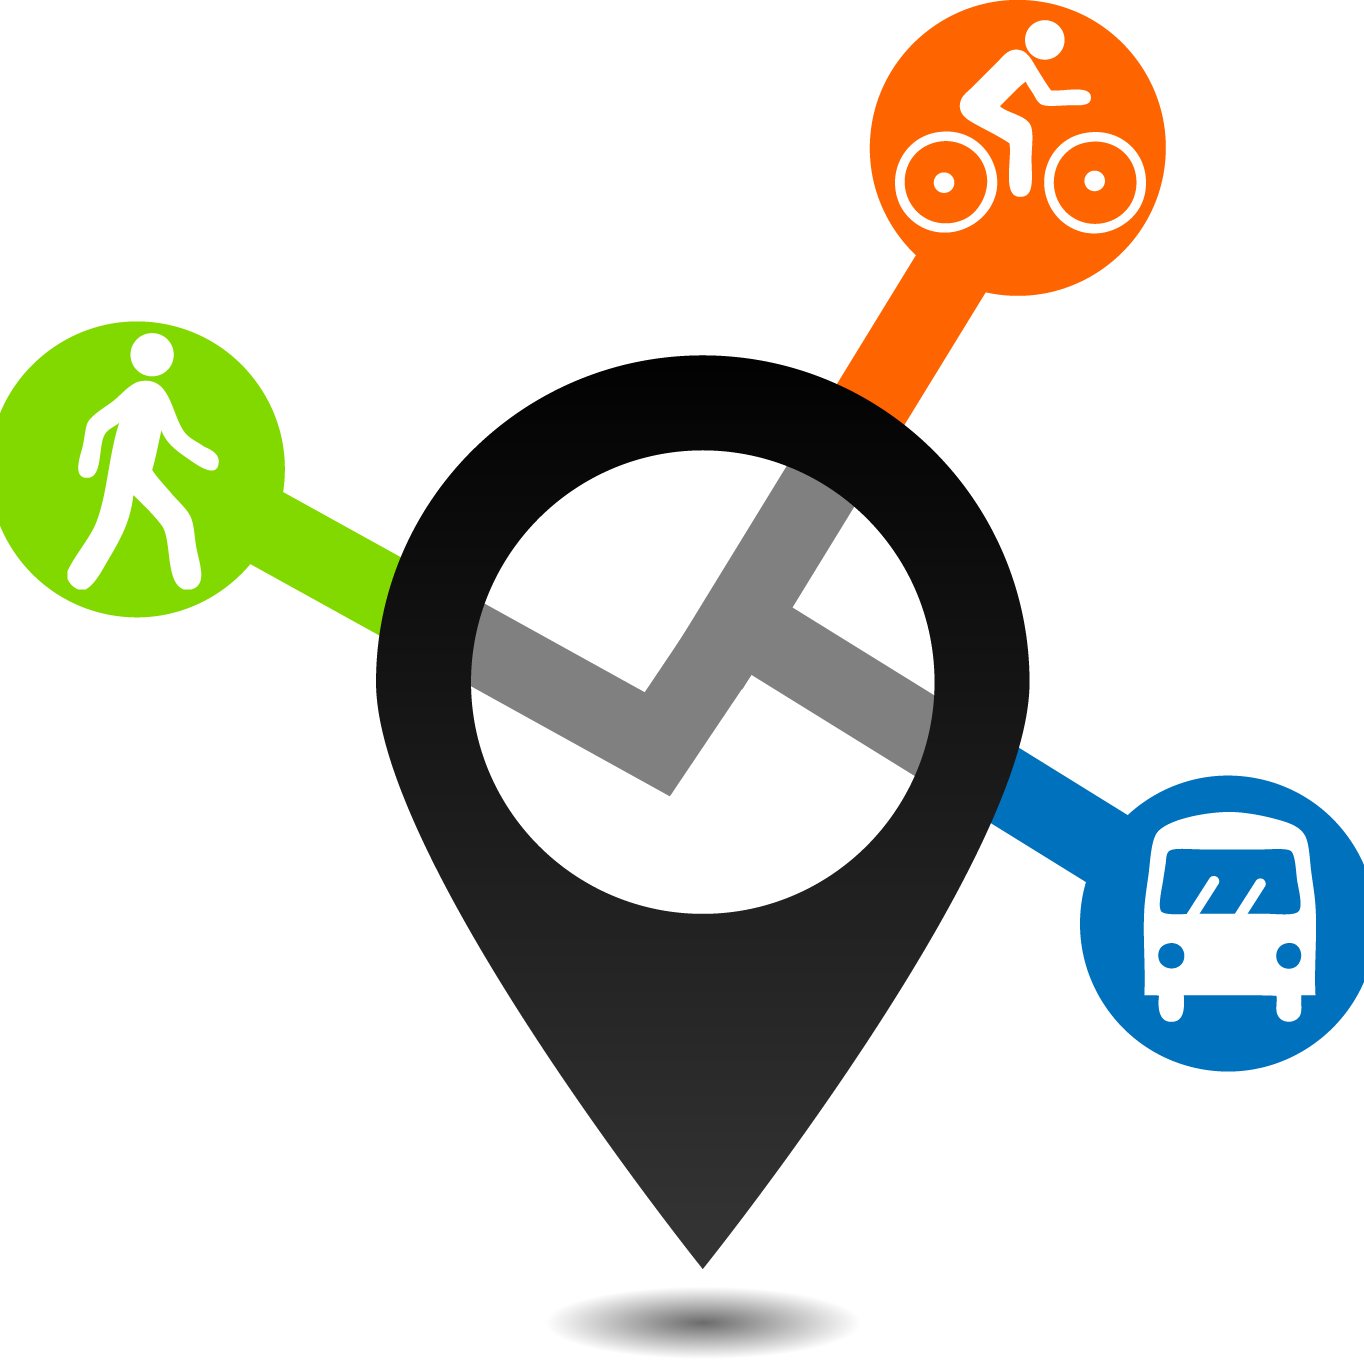 Bicicleta como transporte intermodal urbano. Promover el uso de la bici combinado con otros medios como metro, autobús y tren. #movilidadsostenible